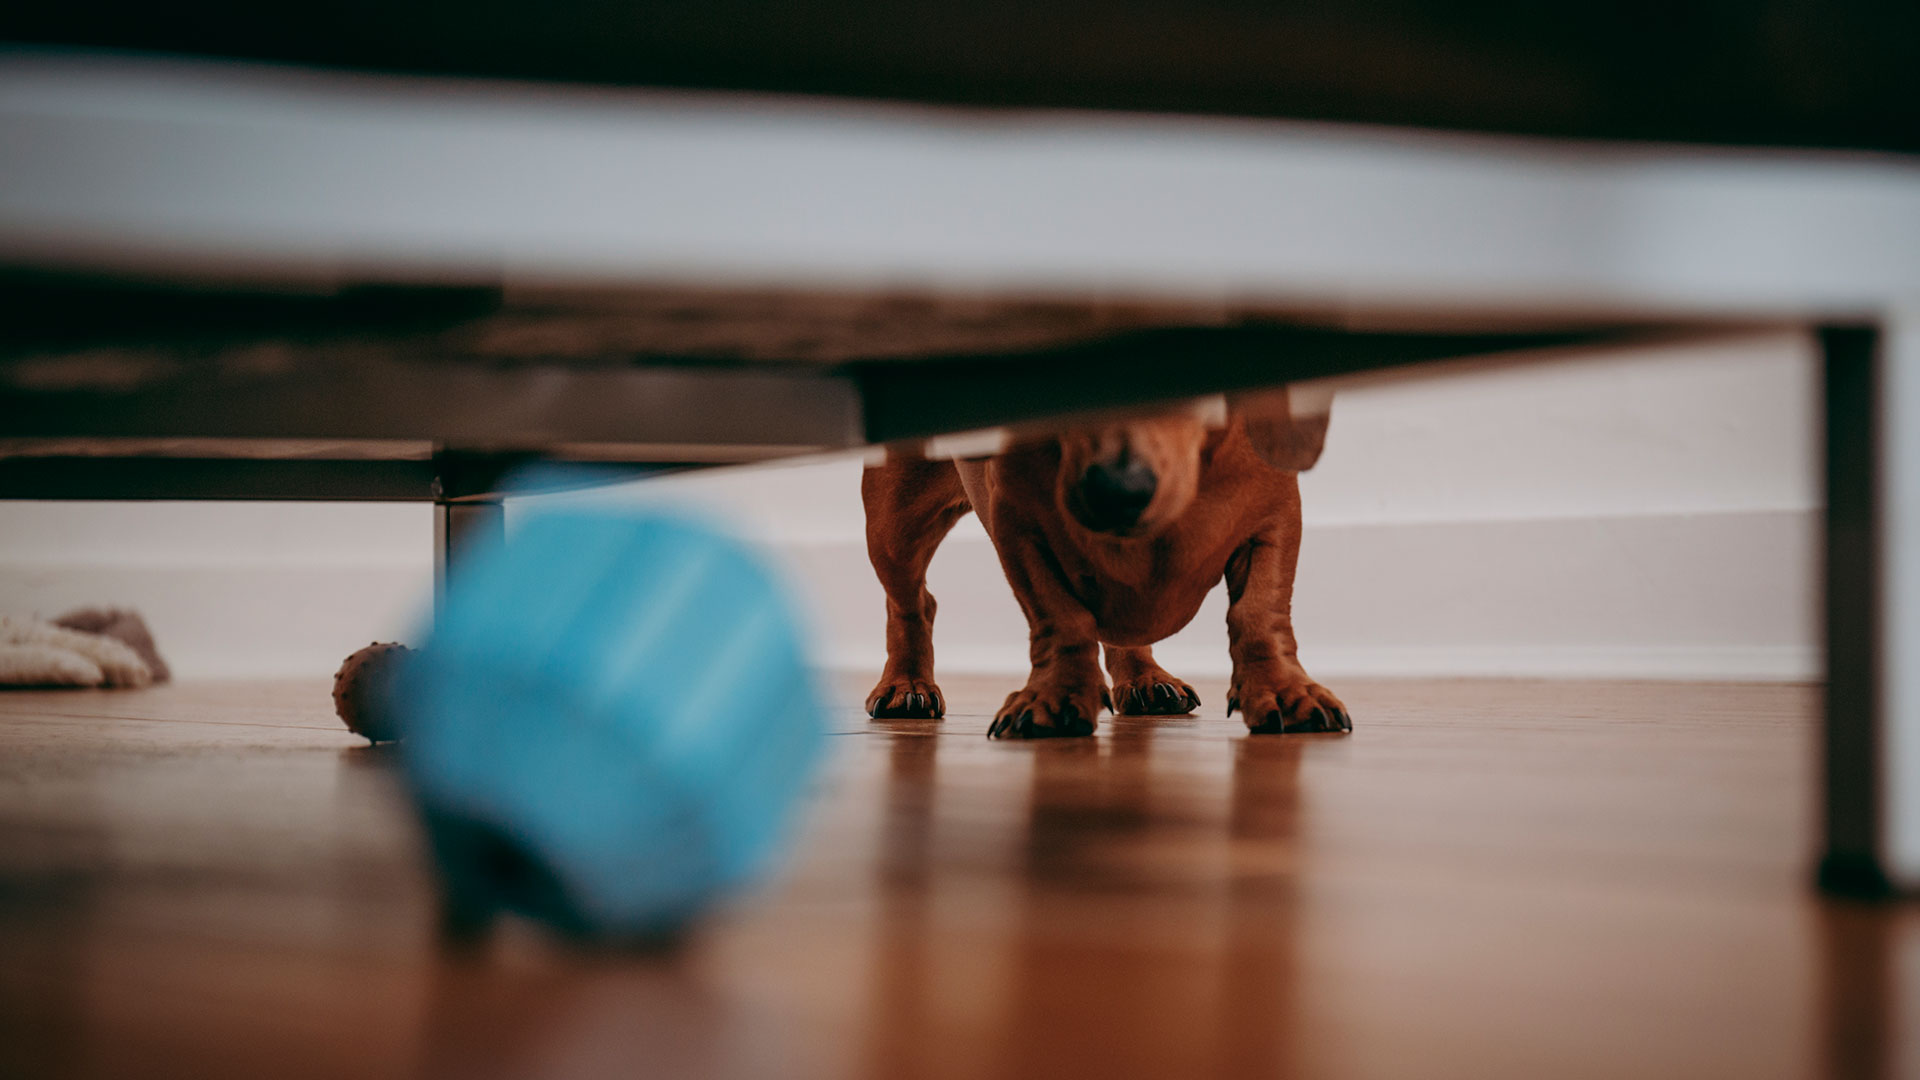 Las actividades y juegos ayudan a evitar el sedentarismo y contribuyen a fortalecer el vínculo con las mascotas (Shutterstock)